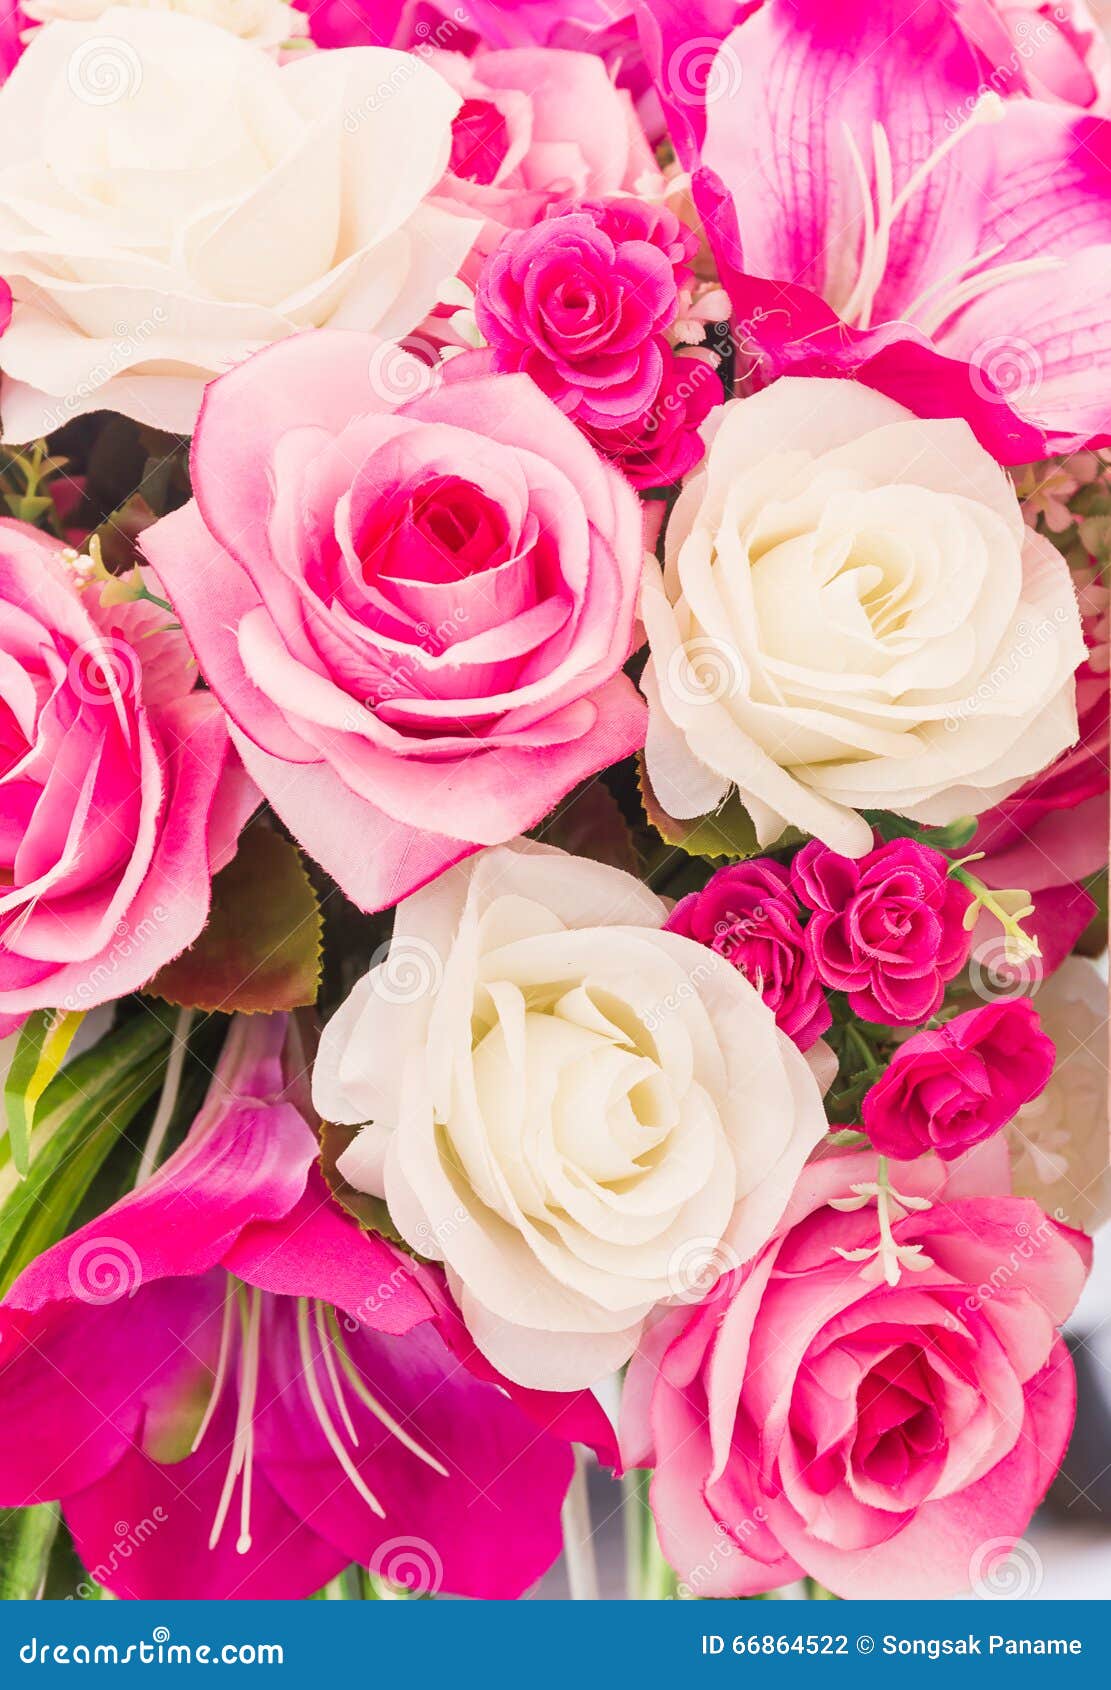 La Couture Faite Main Fausse De Fleur Rose Et Blanche Fleurit Photo stock -  Image du artificiel, décoration: 66864522